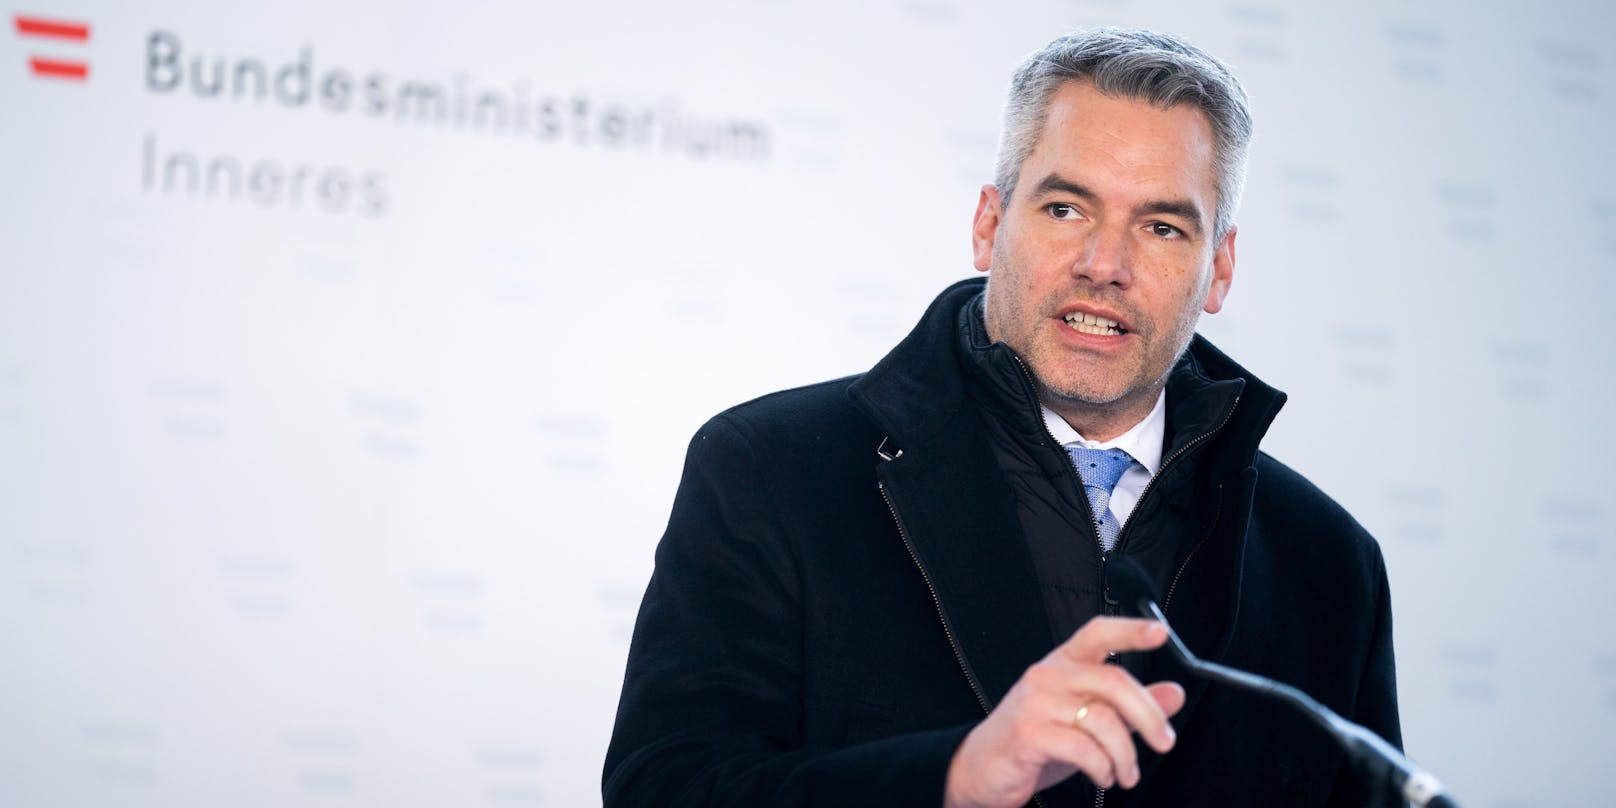 Innenminister Karl Nehammer (ÖVP) am 4. Dezember im Rahmen einer Pressekonferenz